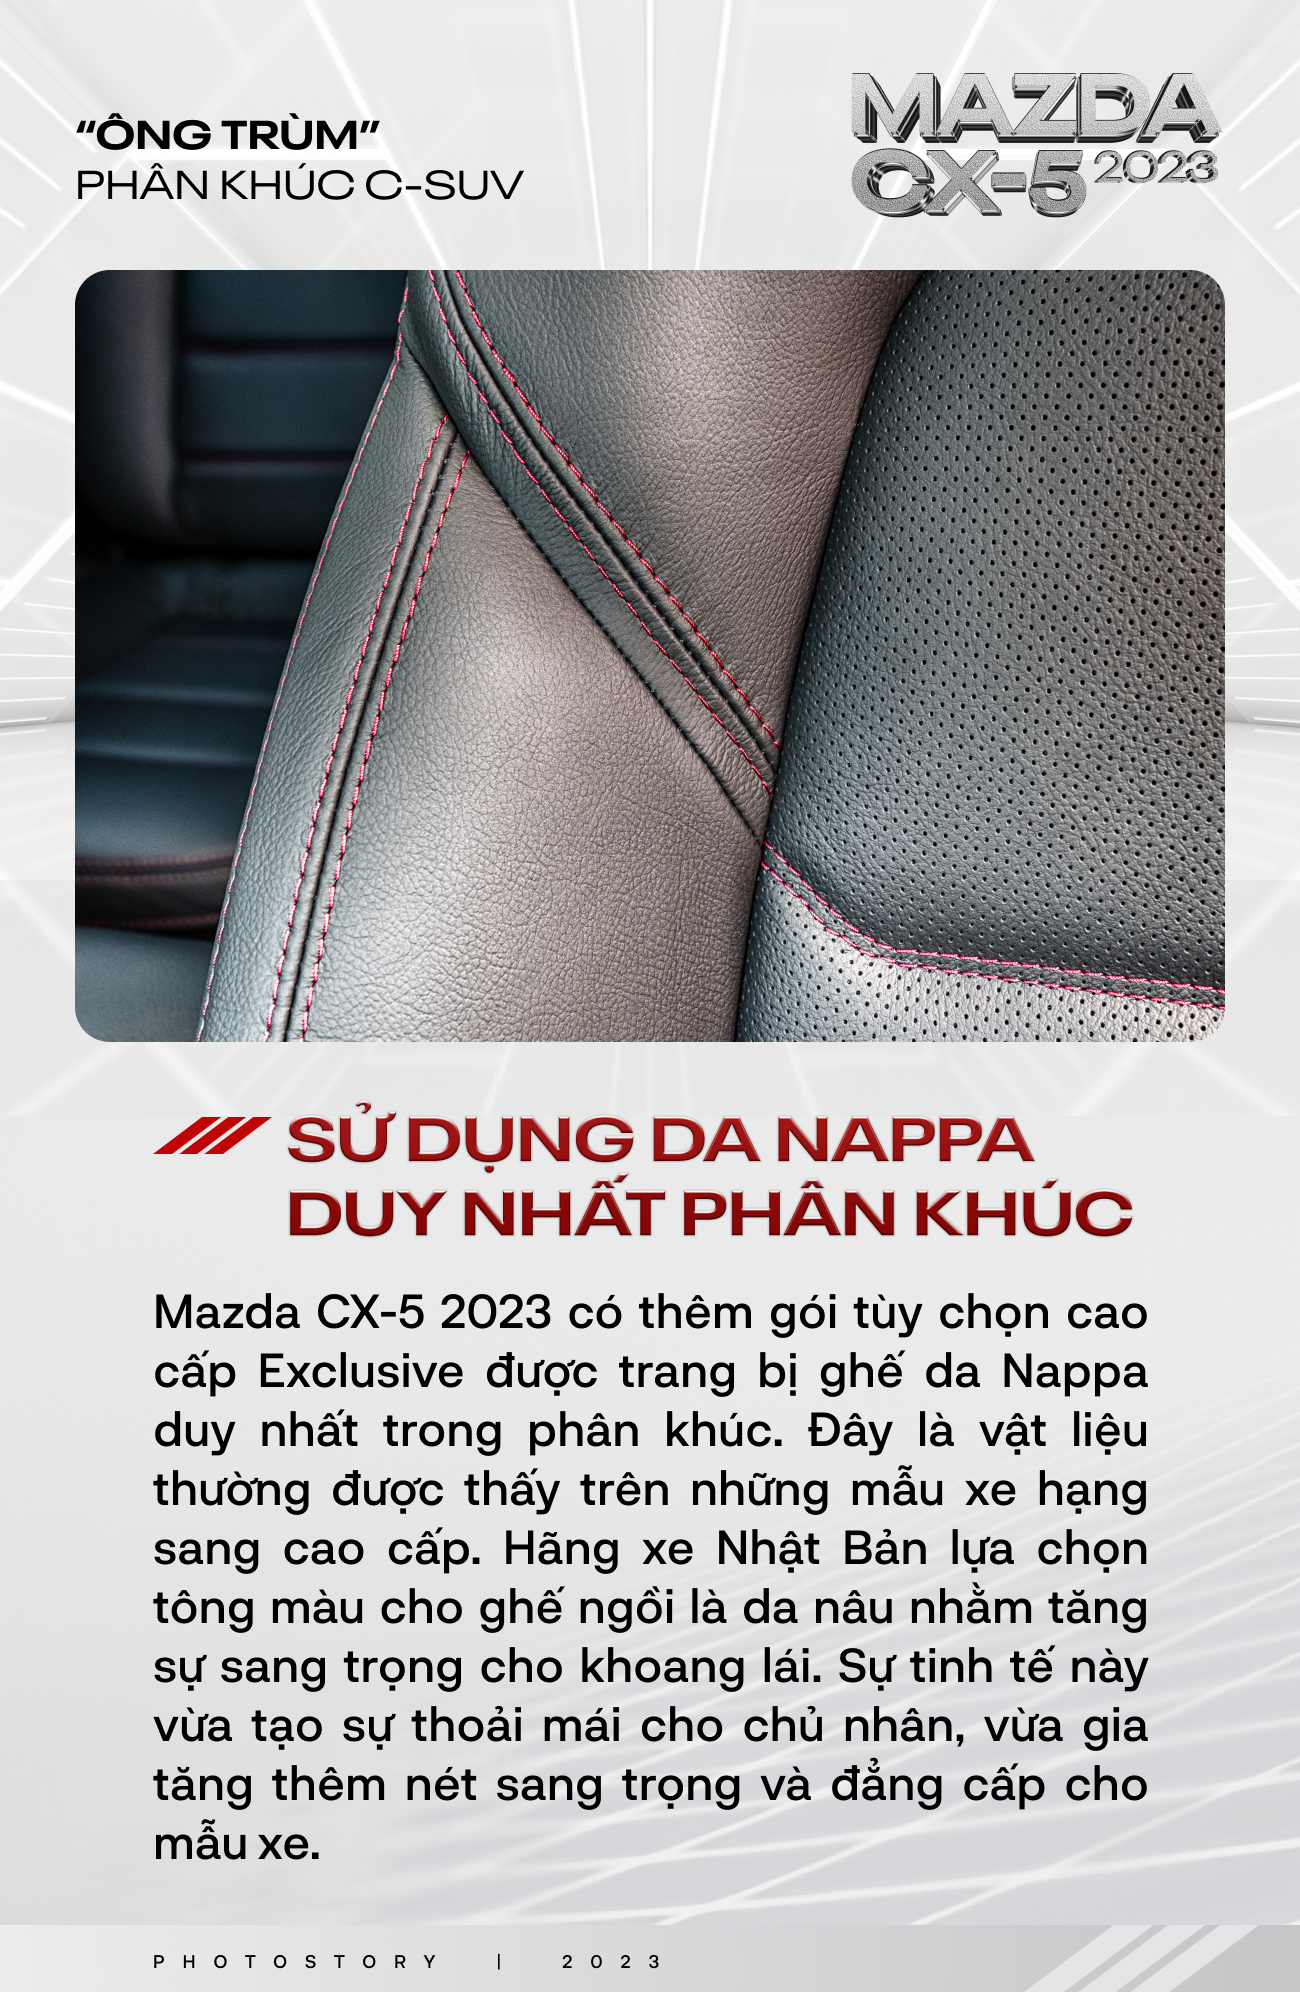 Nếu vẫn chưa tin Mazda CX-5 2023 là ông trùm phân khúc C-SUV thì 10 lý do sau đây đủ sức chứng minh điều đó - Ảnh 8.